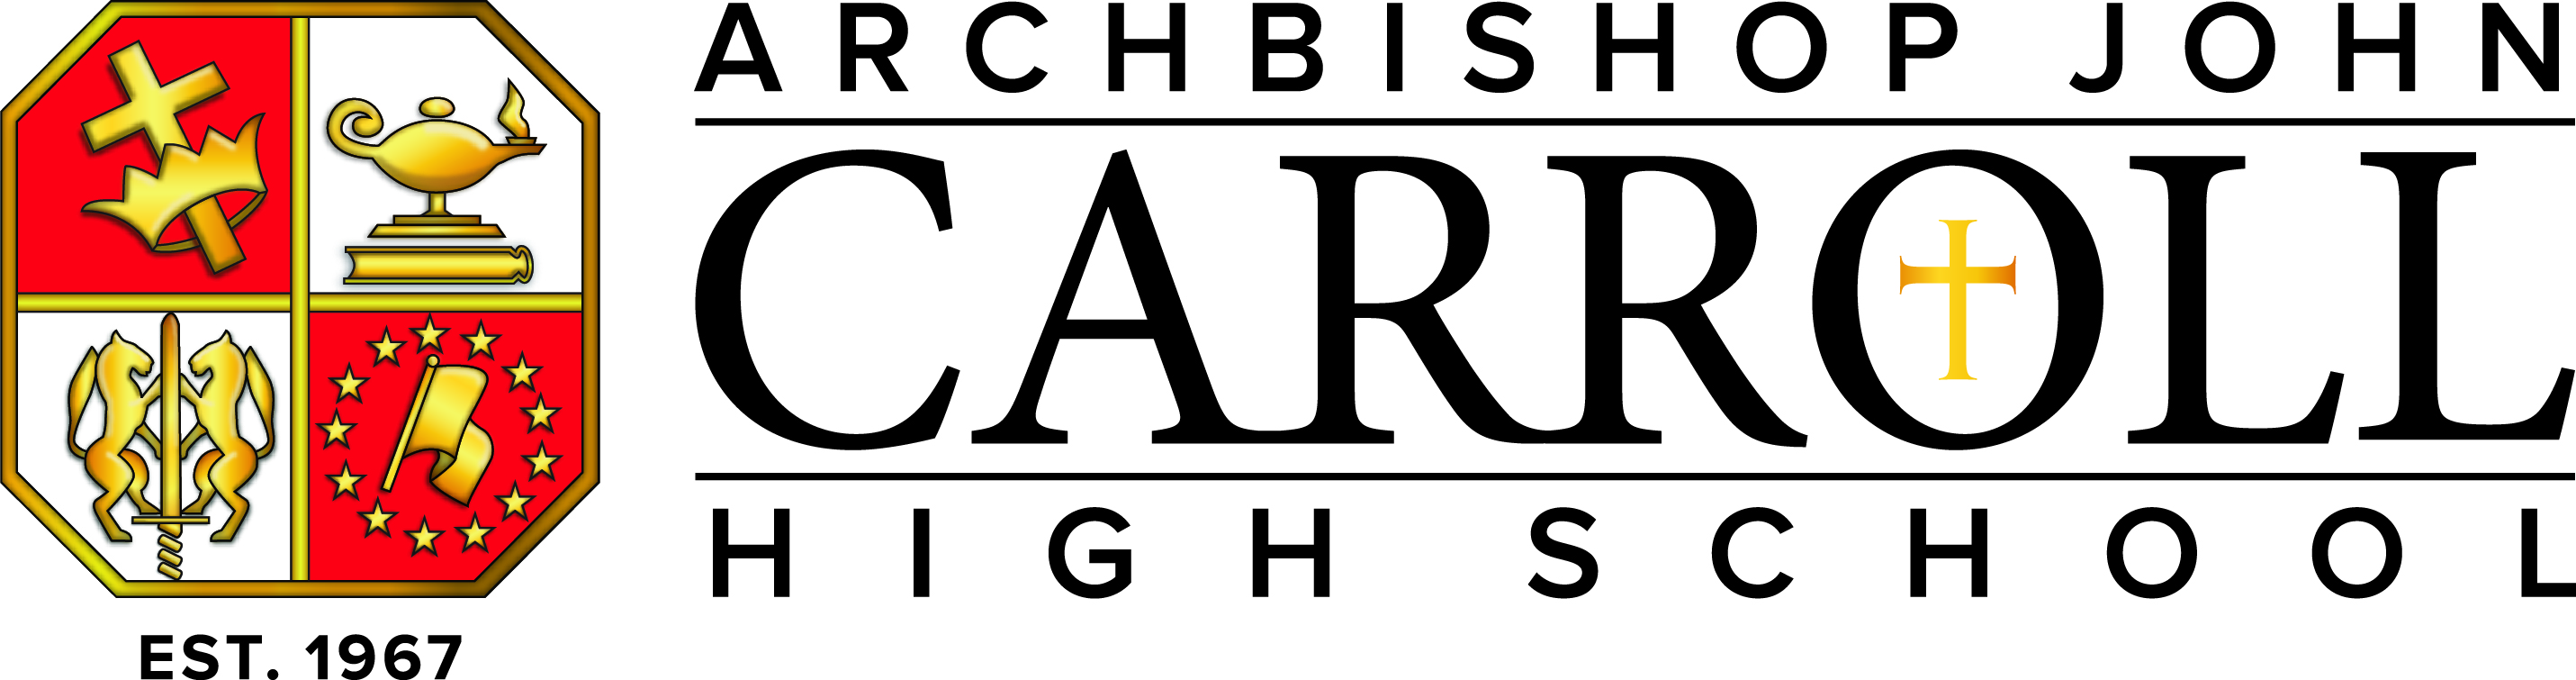 Archbishop Carroll High School